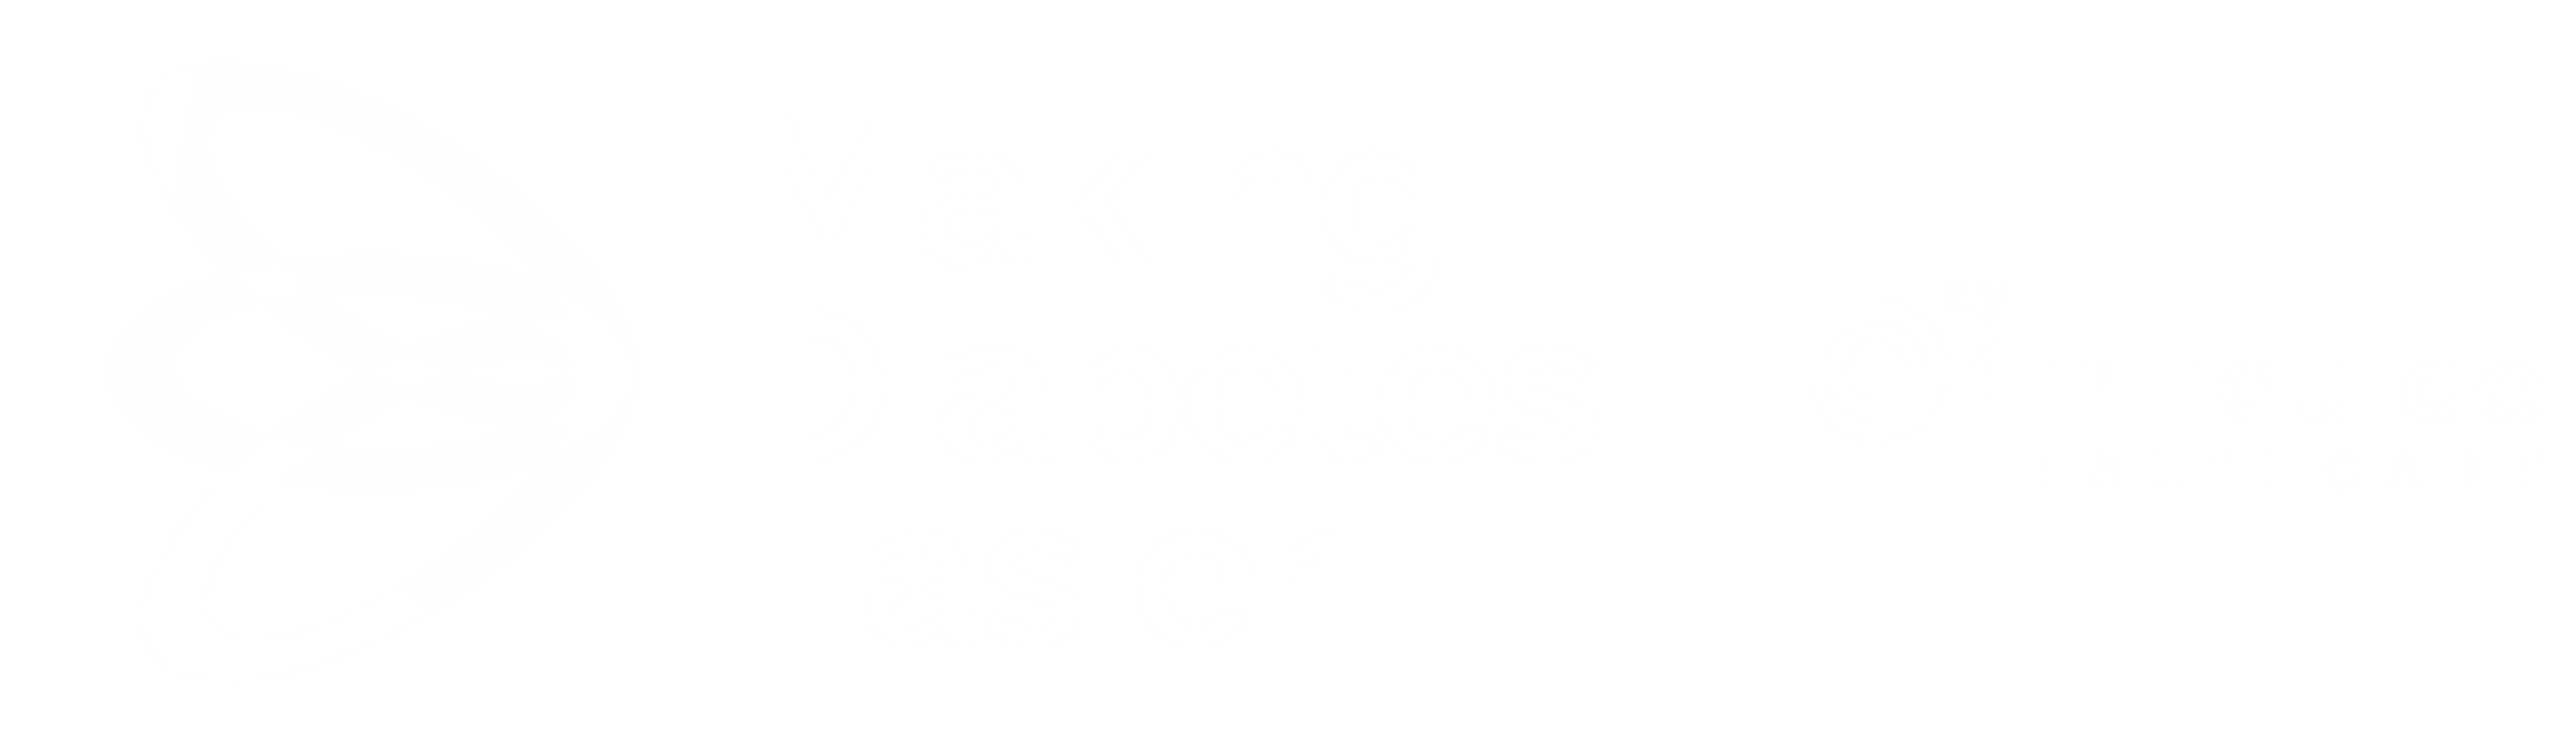 making diabetes easier by air liquide healthcare uk